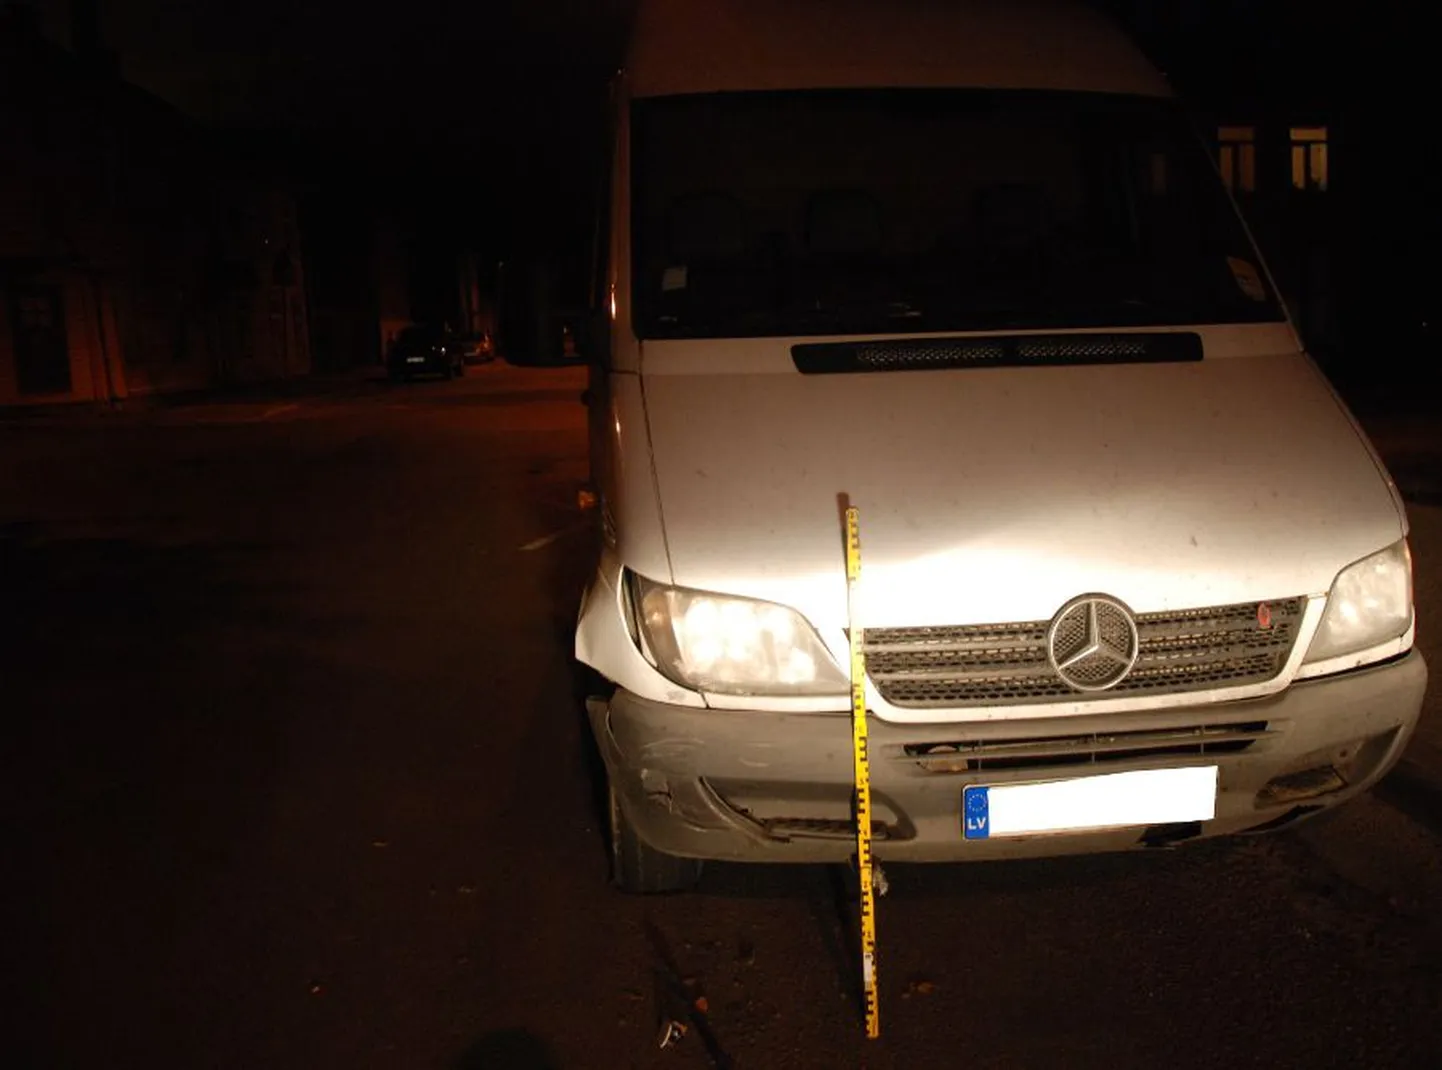 Tartus Uue ja Pärna tänavate ristmiku juures sõideti külge kaubikule Mercedes Benz.